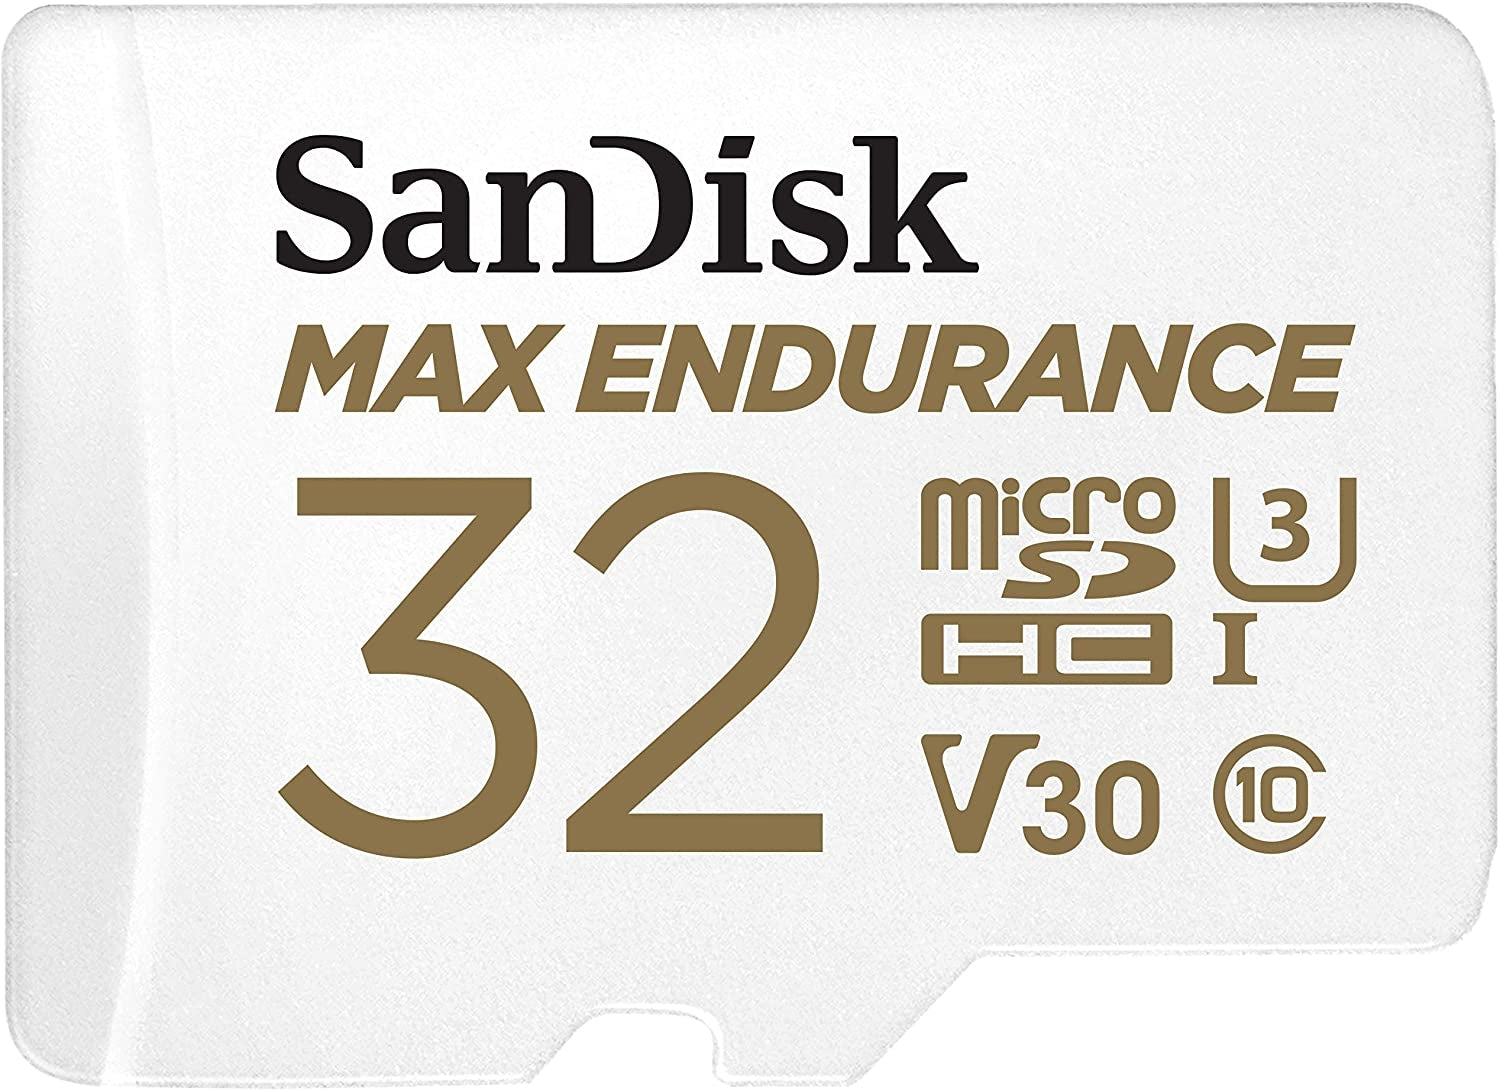 sandisk-max-endurance-microsdhc-card-sqqvr-32g-15-000-hrs-uhs-i-c10-u3-v30-100mb-s-r-40mb-s-w-sd-adaptor-sdsqqvr-032g-gn6ia